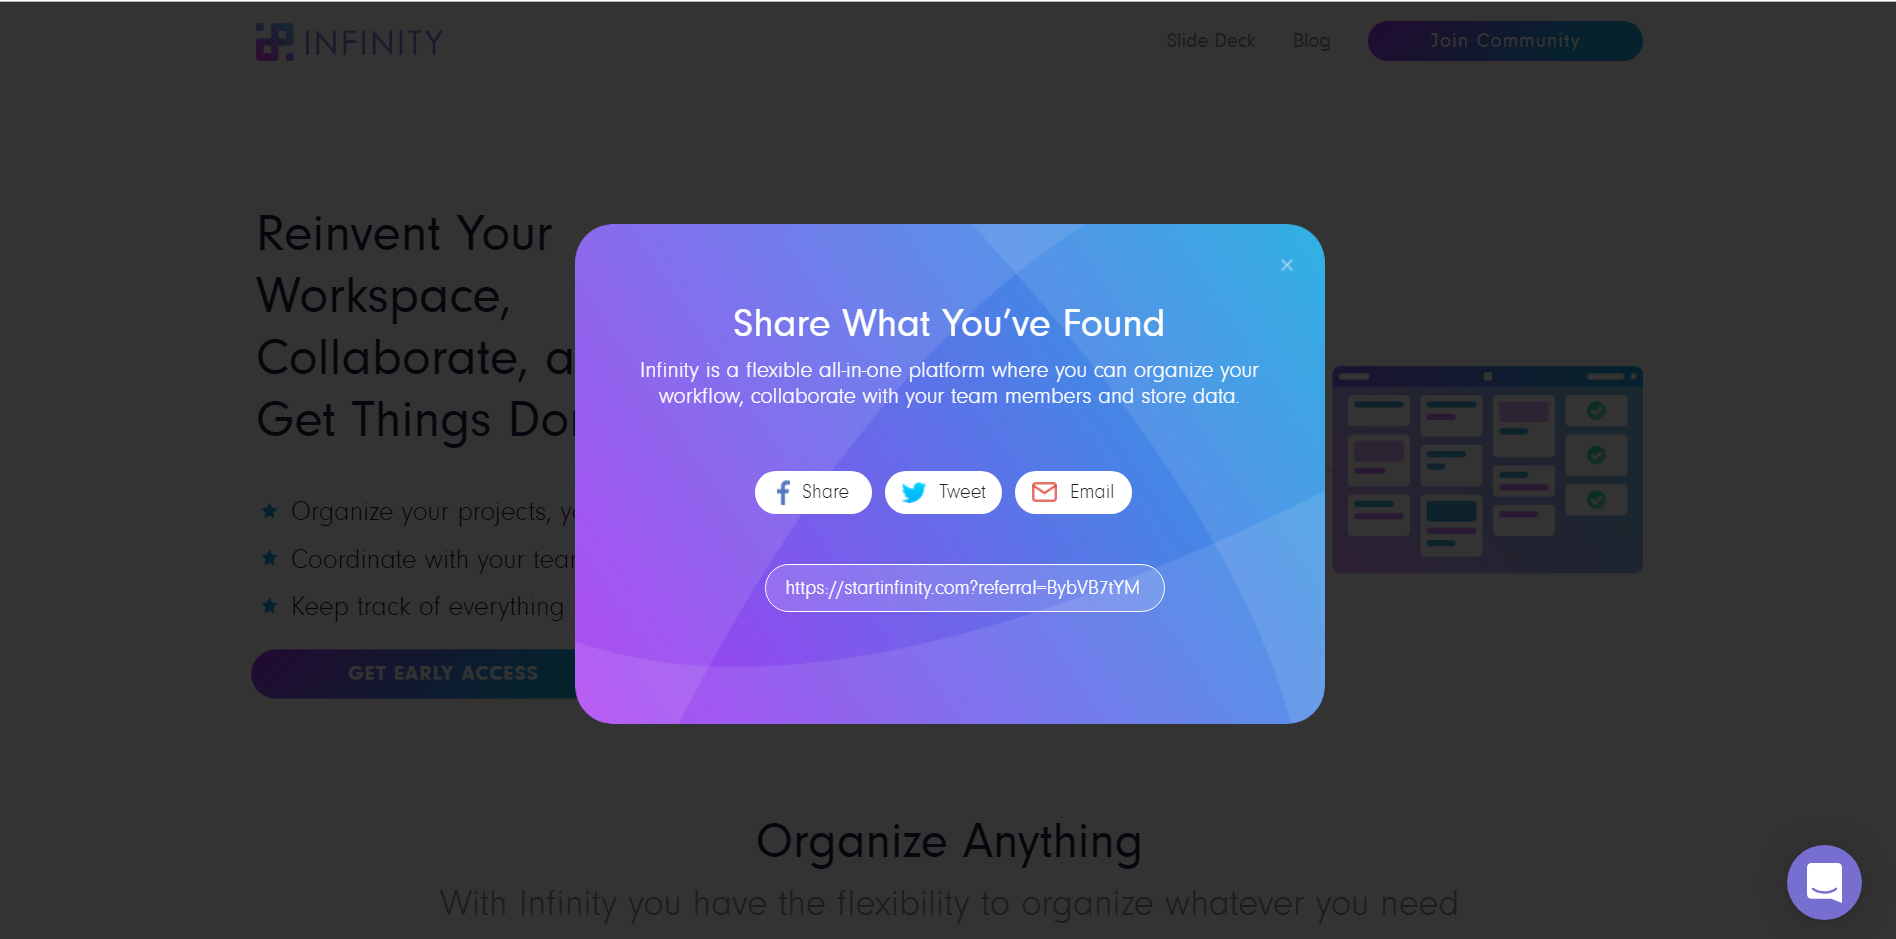 Infinity's pre-launch sharing widget